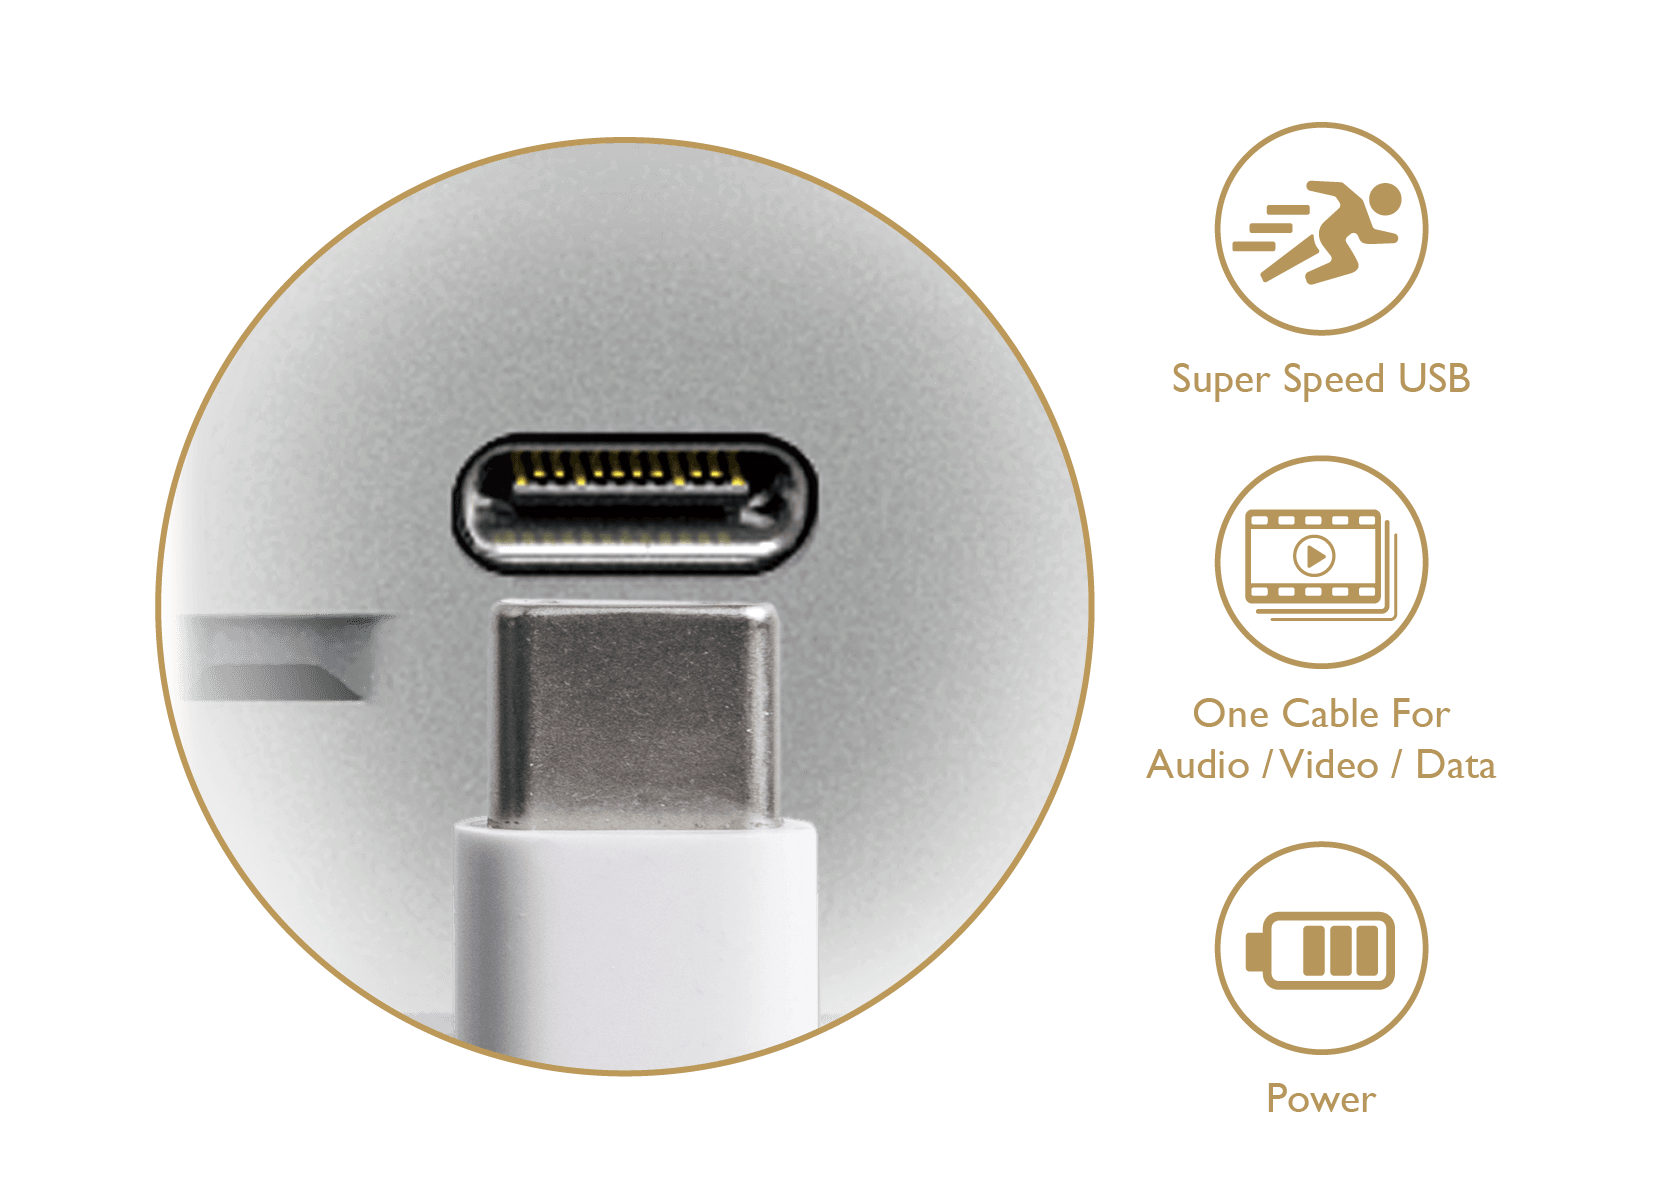 BenQ USB-C port A legújabb USB-Cᵀᴹ port nagy sebességű video/audio/adatátvitelt és 60W teljesítményt biztosít egyetlen kábellel.